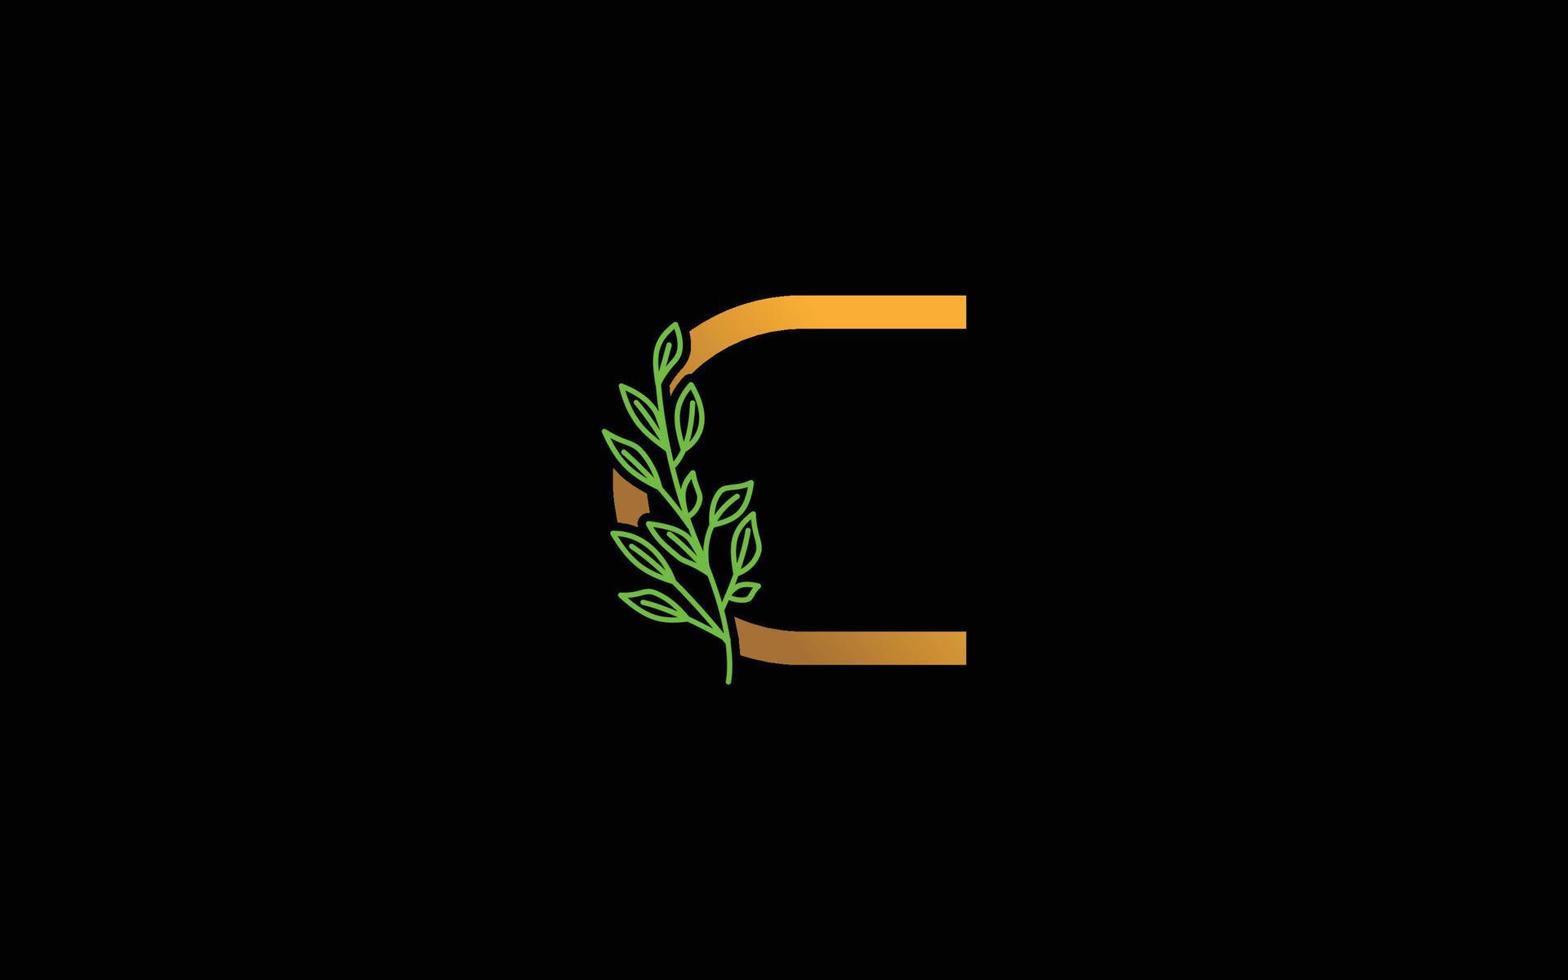 c logo vecteur floral pour la société d'identité. illustration vectorielle de lettre initiale nature modèle pour votre marque.